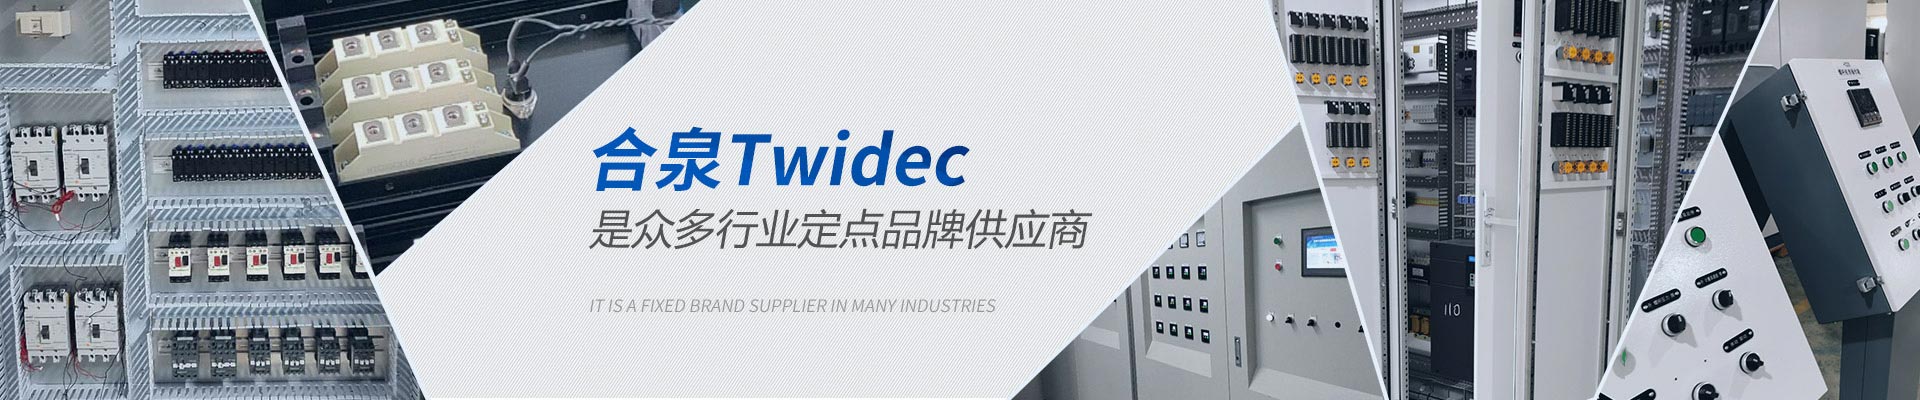 合泉Twidec众多行业定点品牌供应商